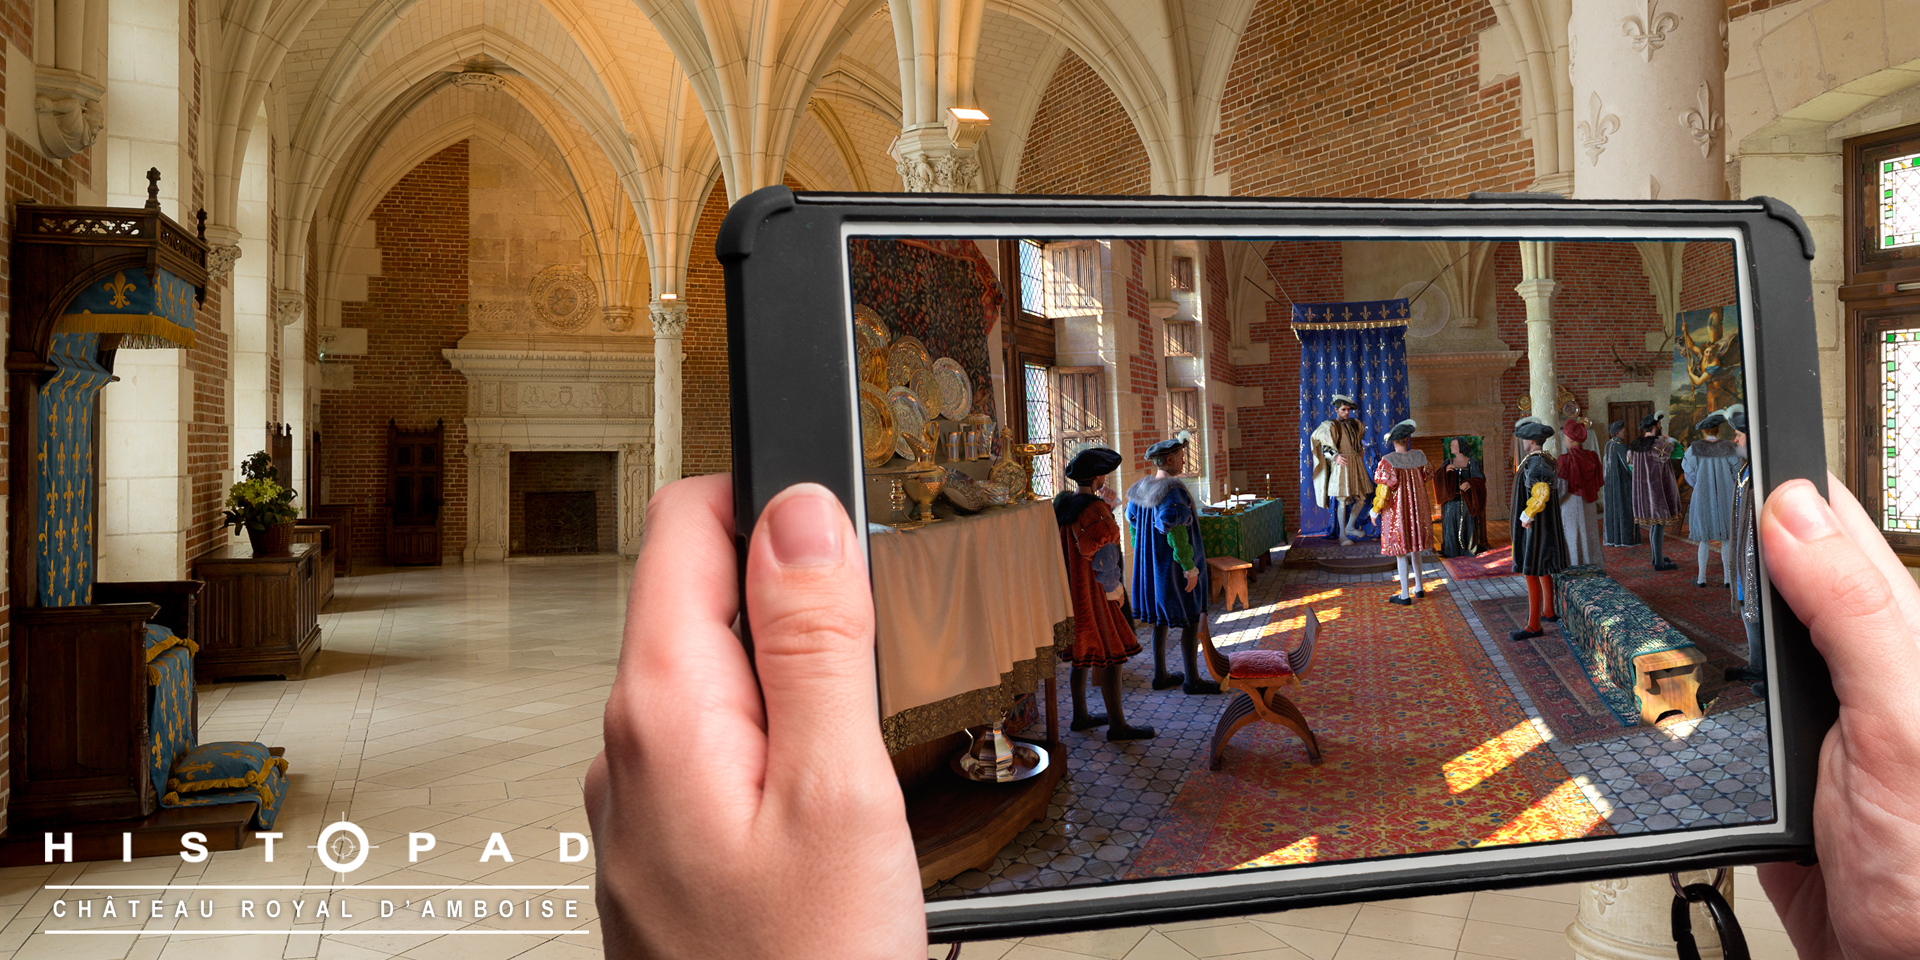 Histopad - visite en réalité augmentée au Château royal d'Amboise, pour découvrir le patrimoine avec les nouvelles technologies. Région Centre Val de Loire, France.